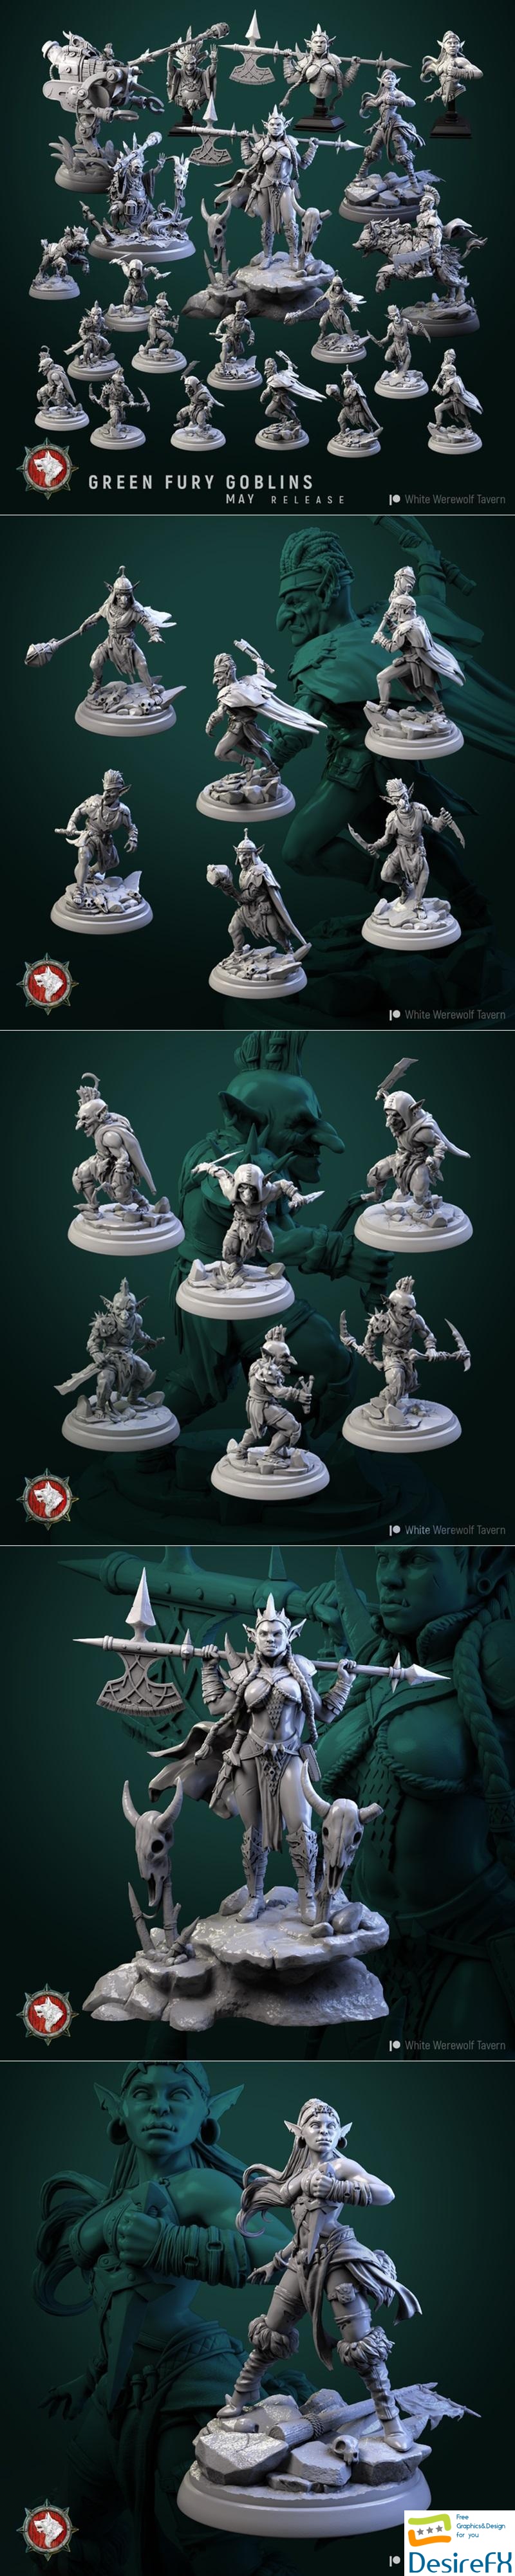 White Werewolf Tavern - Green Fury Goblins 3D Print